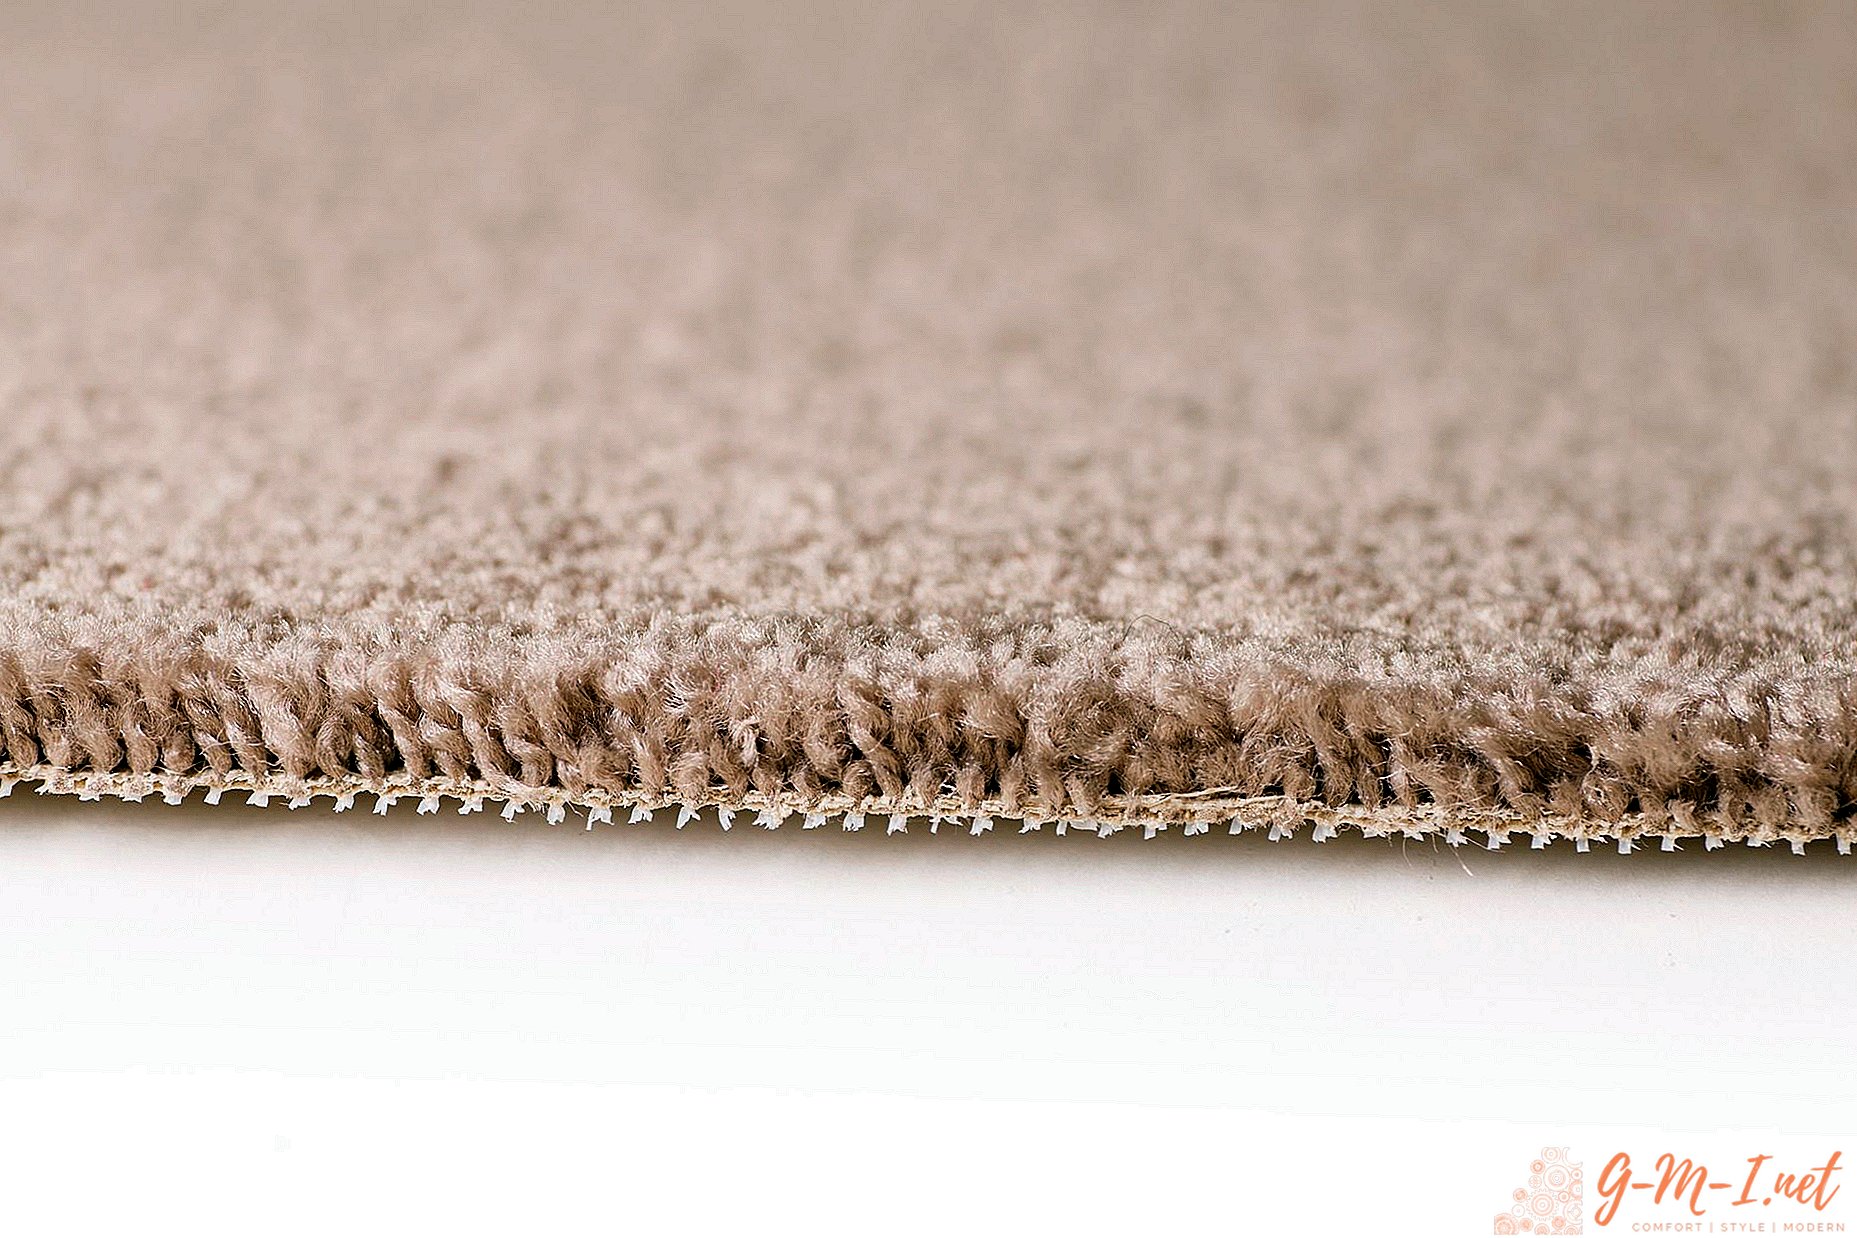 Comment gérer les bords du tapis à la maison